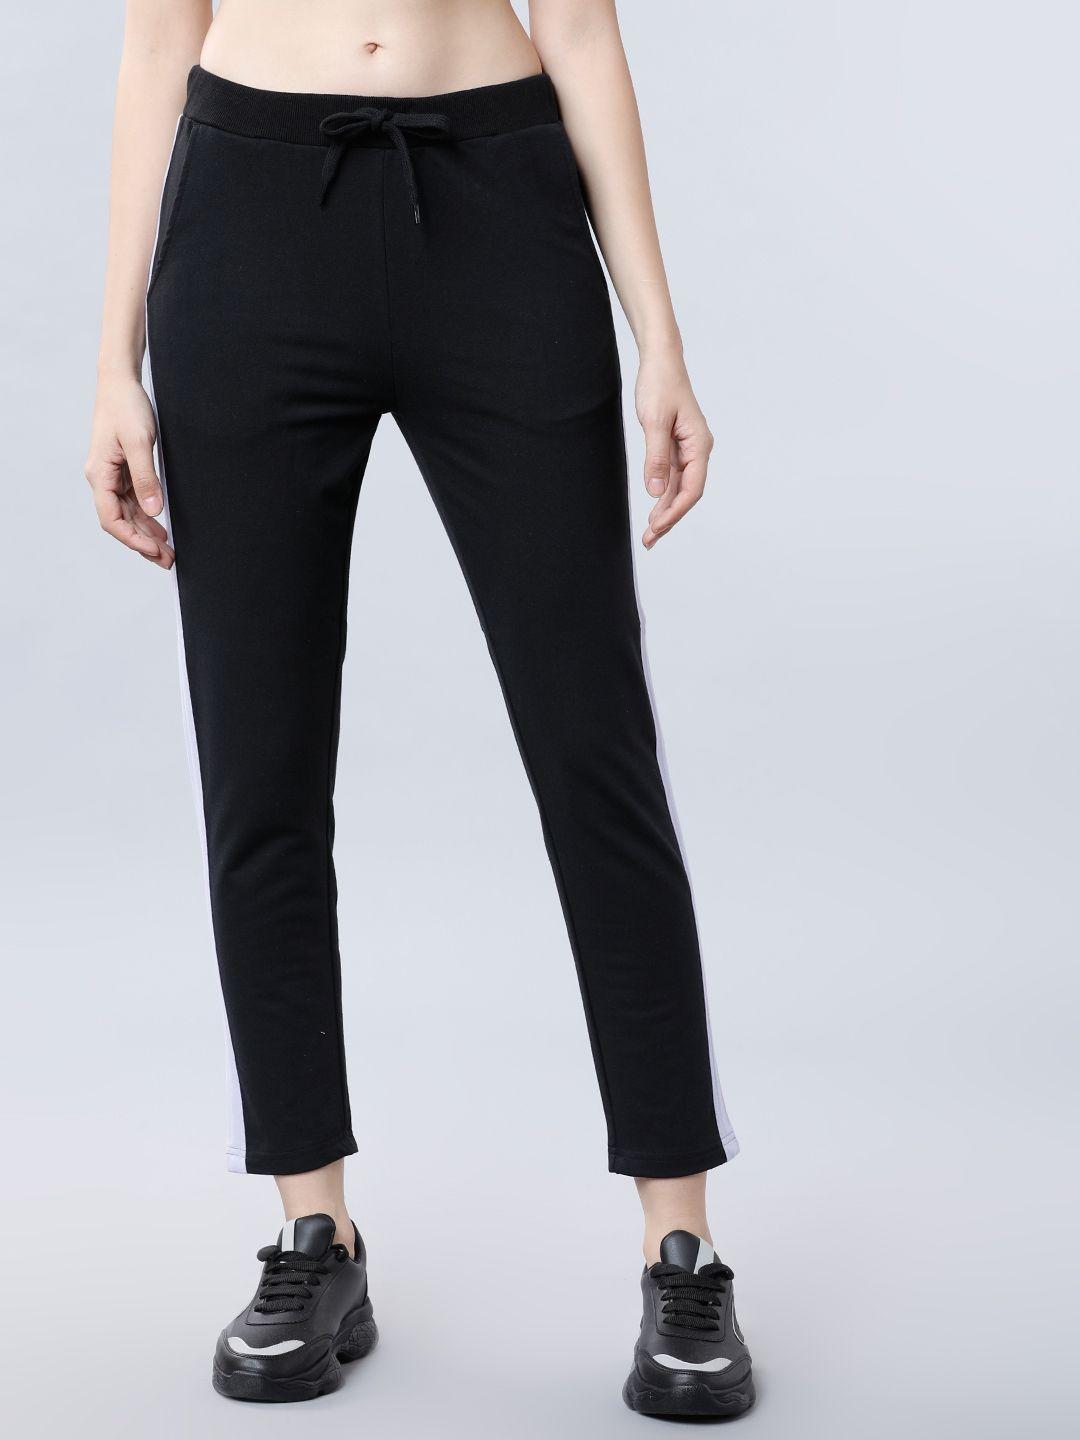 tokyo-talkies-women-black-solid-slim-fit-track-pants